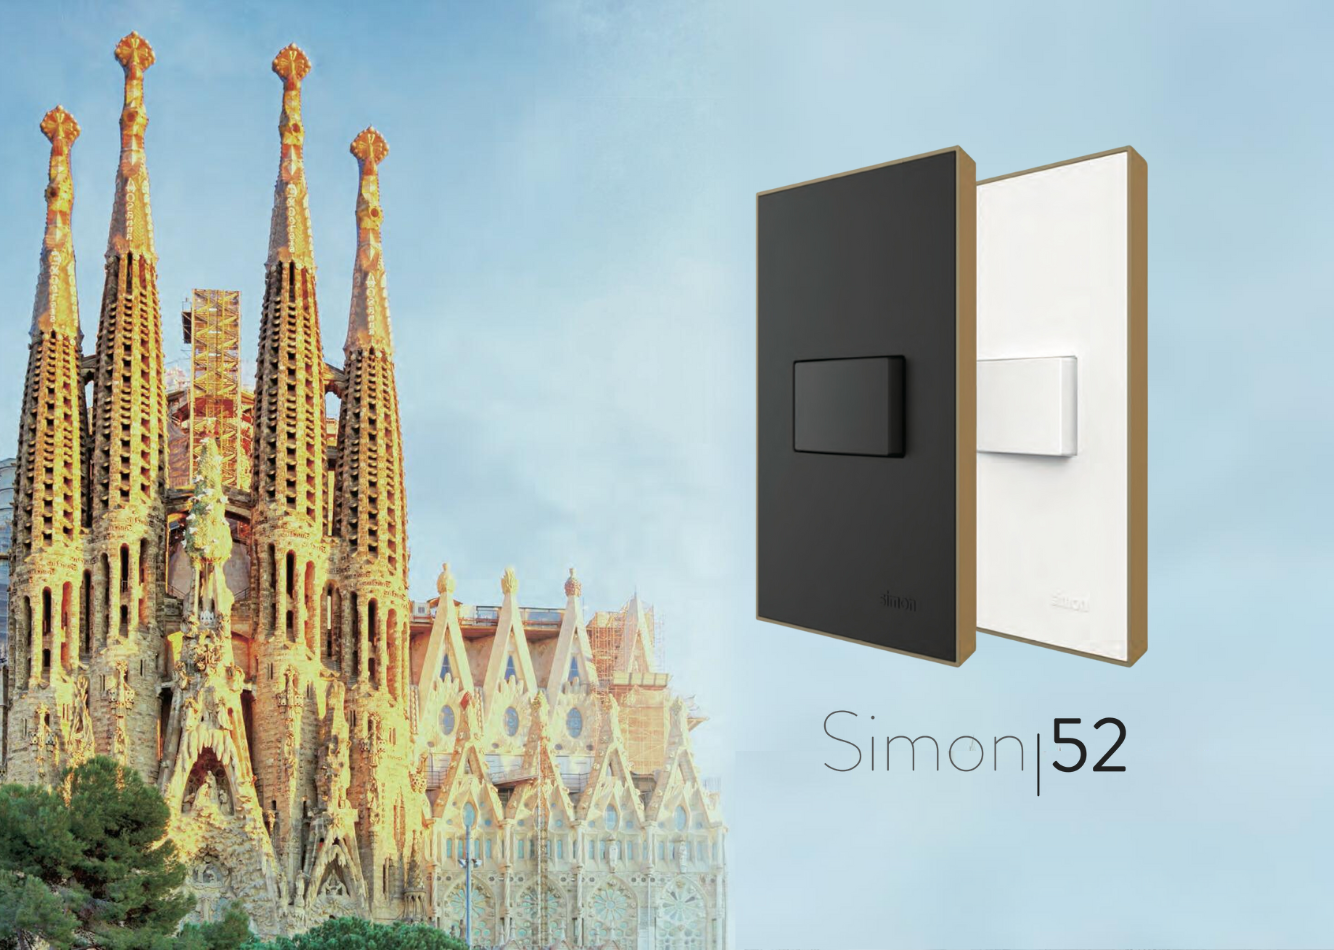 Simon 52 Rectangular Switches